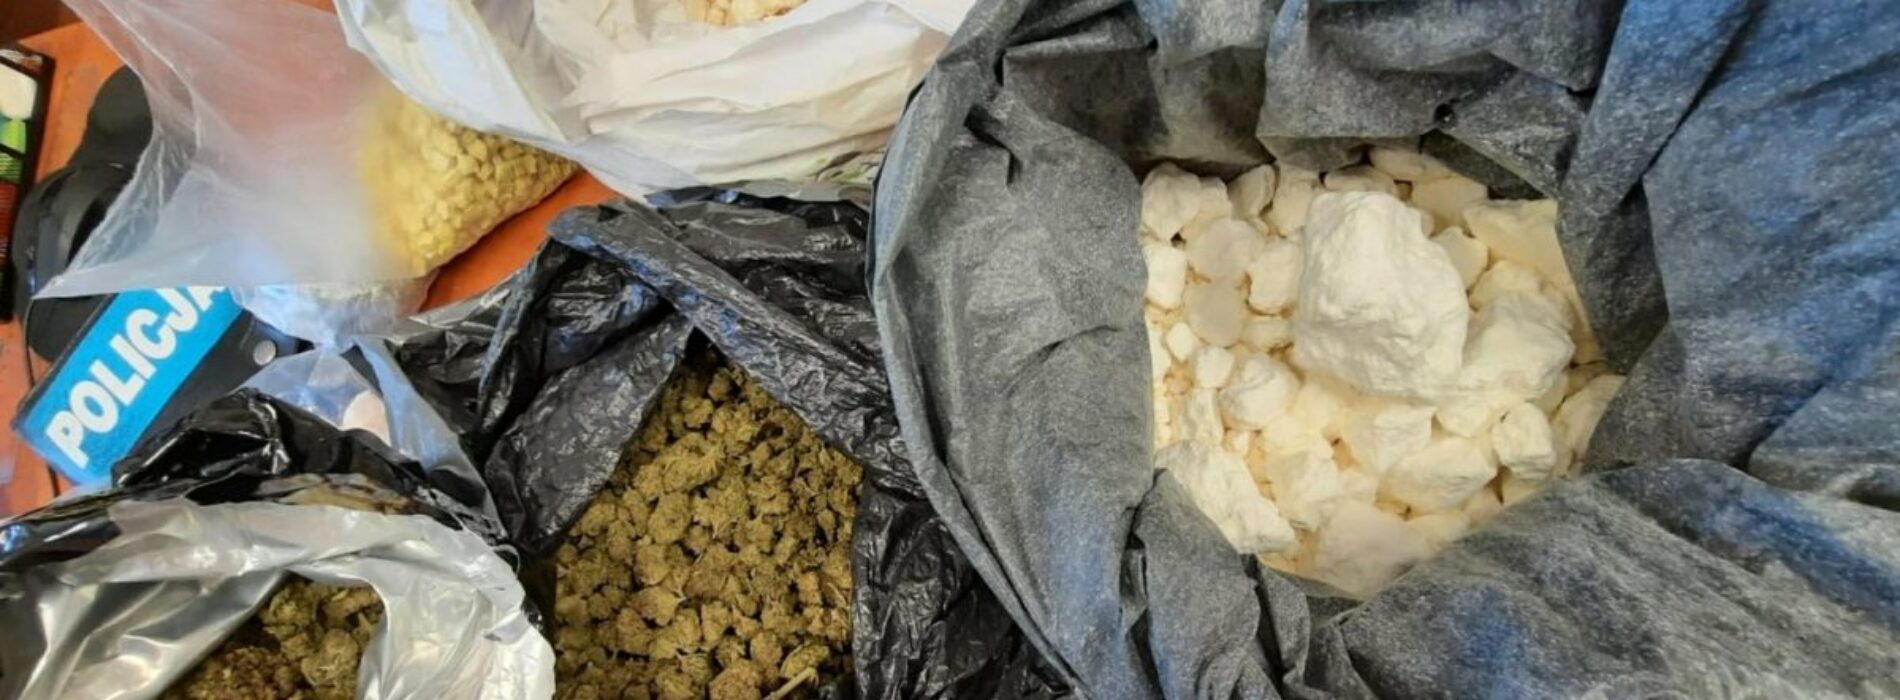 Kryminalni przyjęli ponad 3,5 kilogramów narkotyków